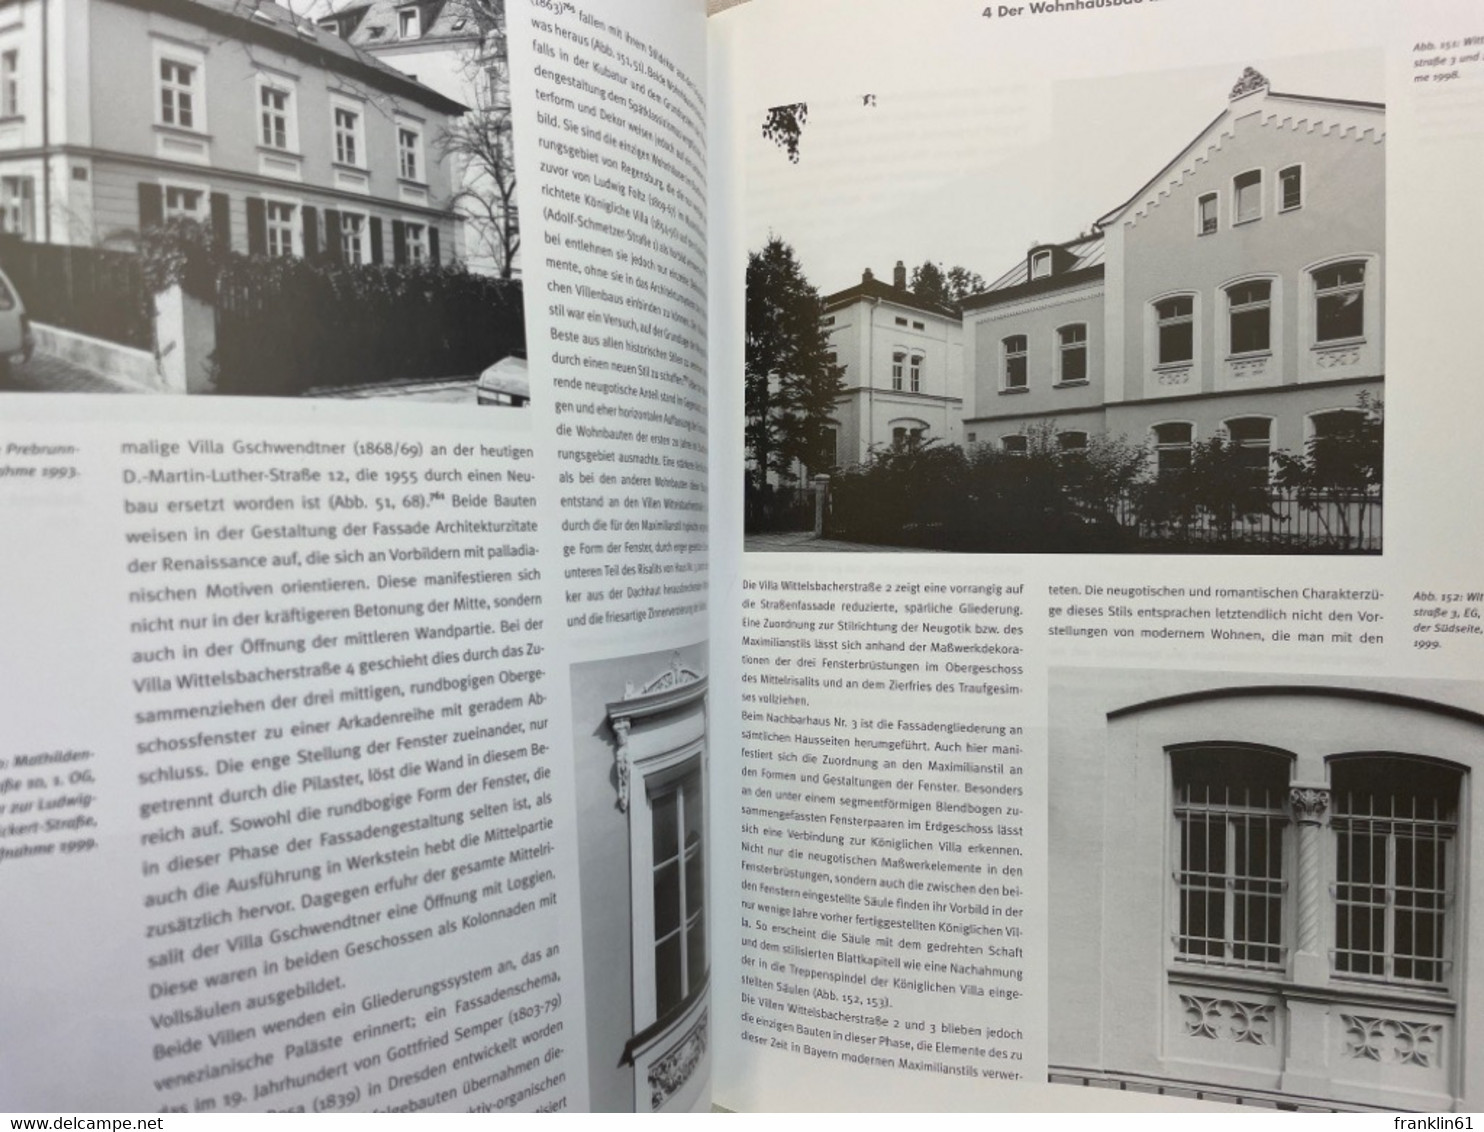 Die Regensburger Stadterweiterung 1860 - 1914 : Stadtentwicklung und Wohnhausarchitektur.